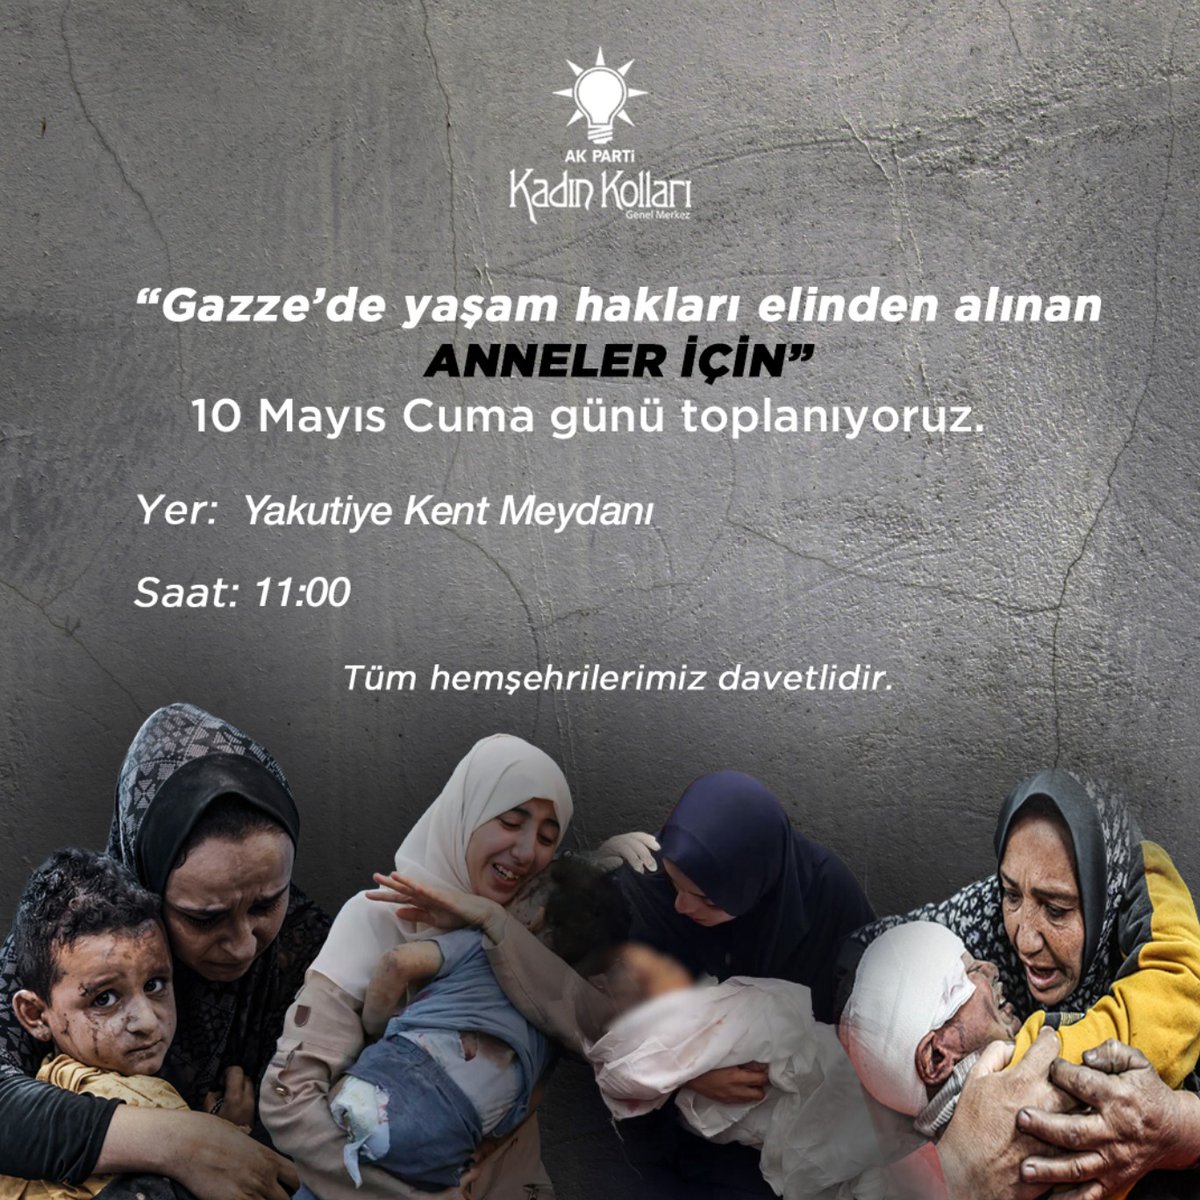 “Gazze’de yaşam hakları elinden alınan ANNELER İÇİN” 10 Mayıs Cuma günü toplanıyoruz. Yer: Yakutiye Kent Meydanı Saat: 11.00 Tüm kadınlar davetlidir. @avbeyzasaltuklu